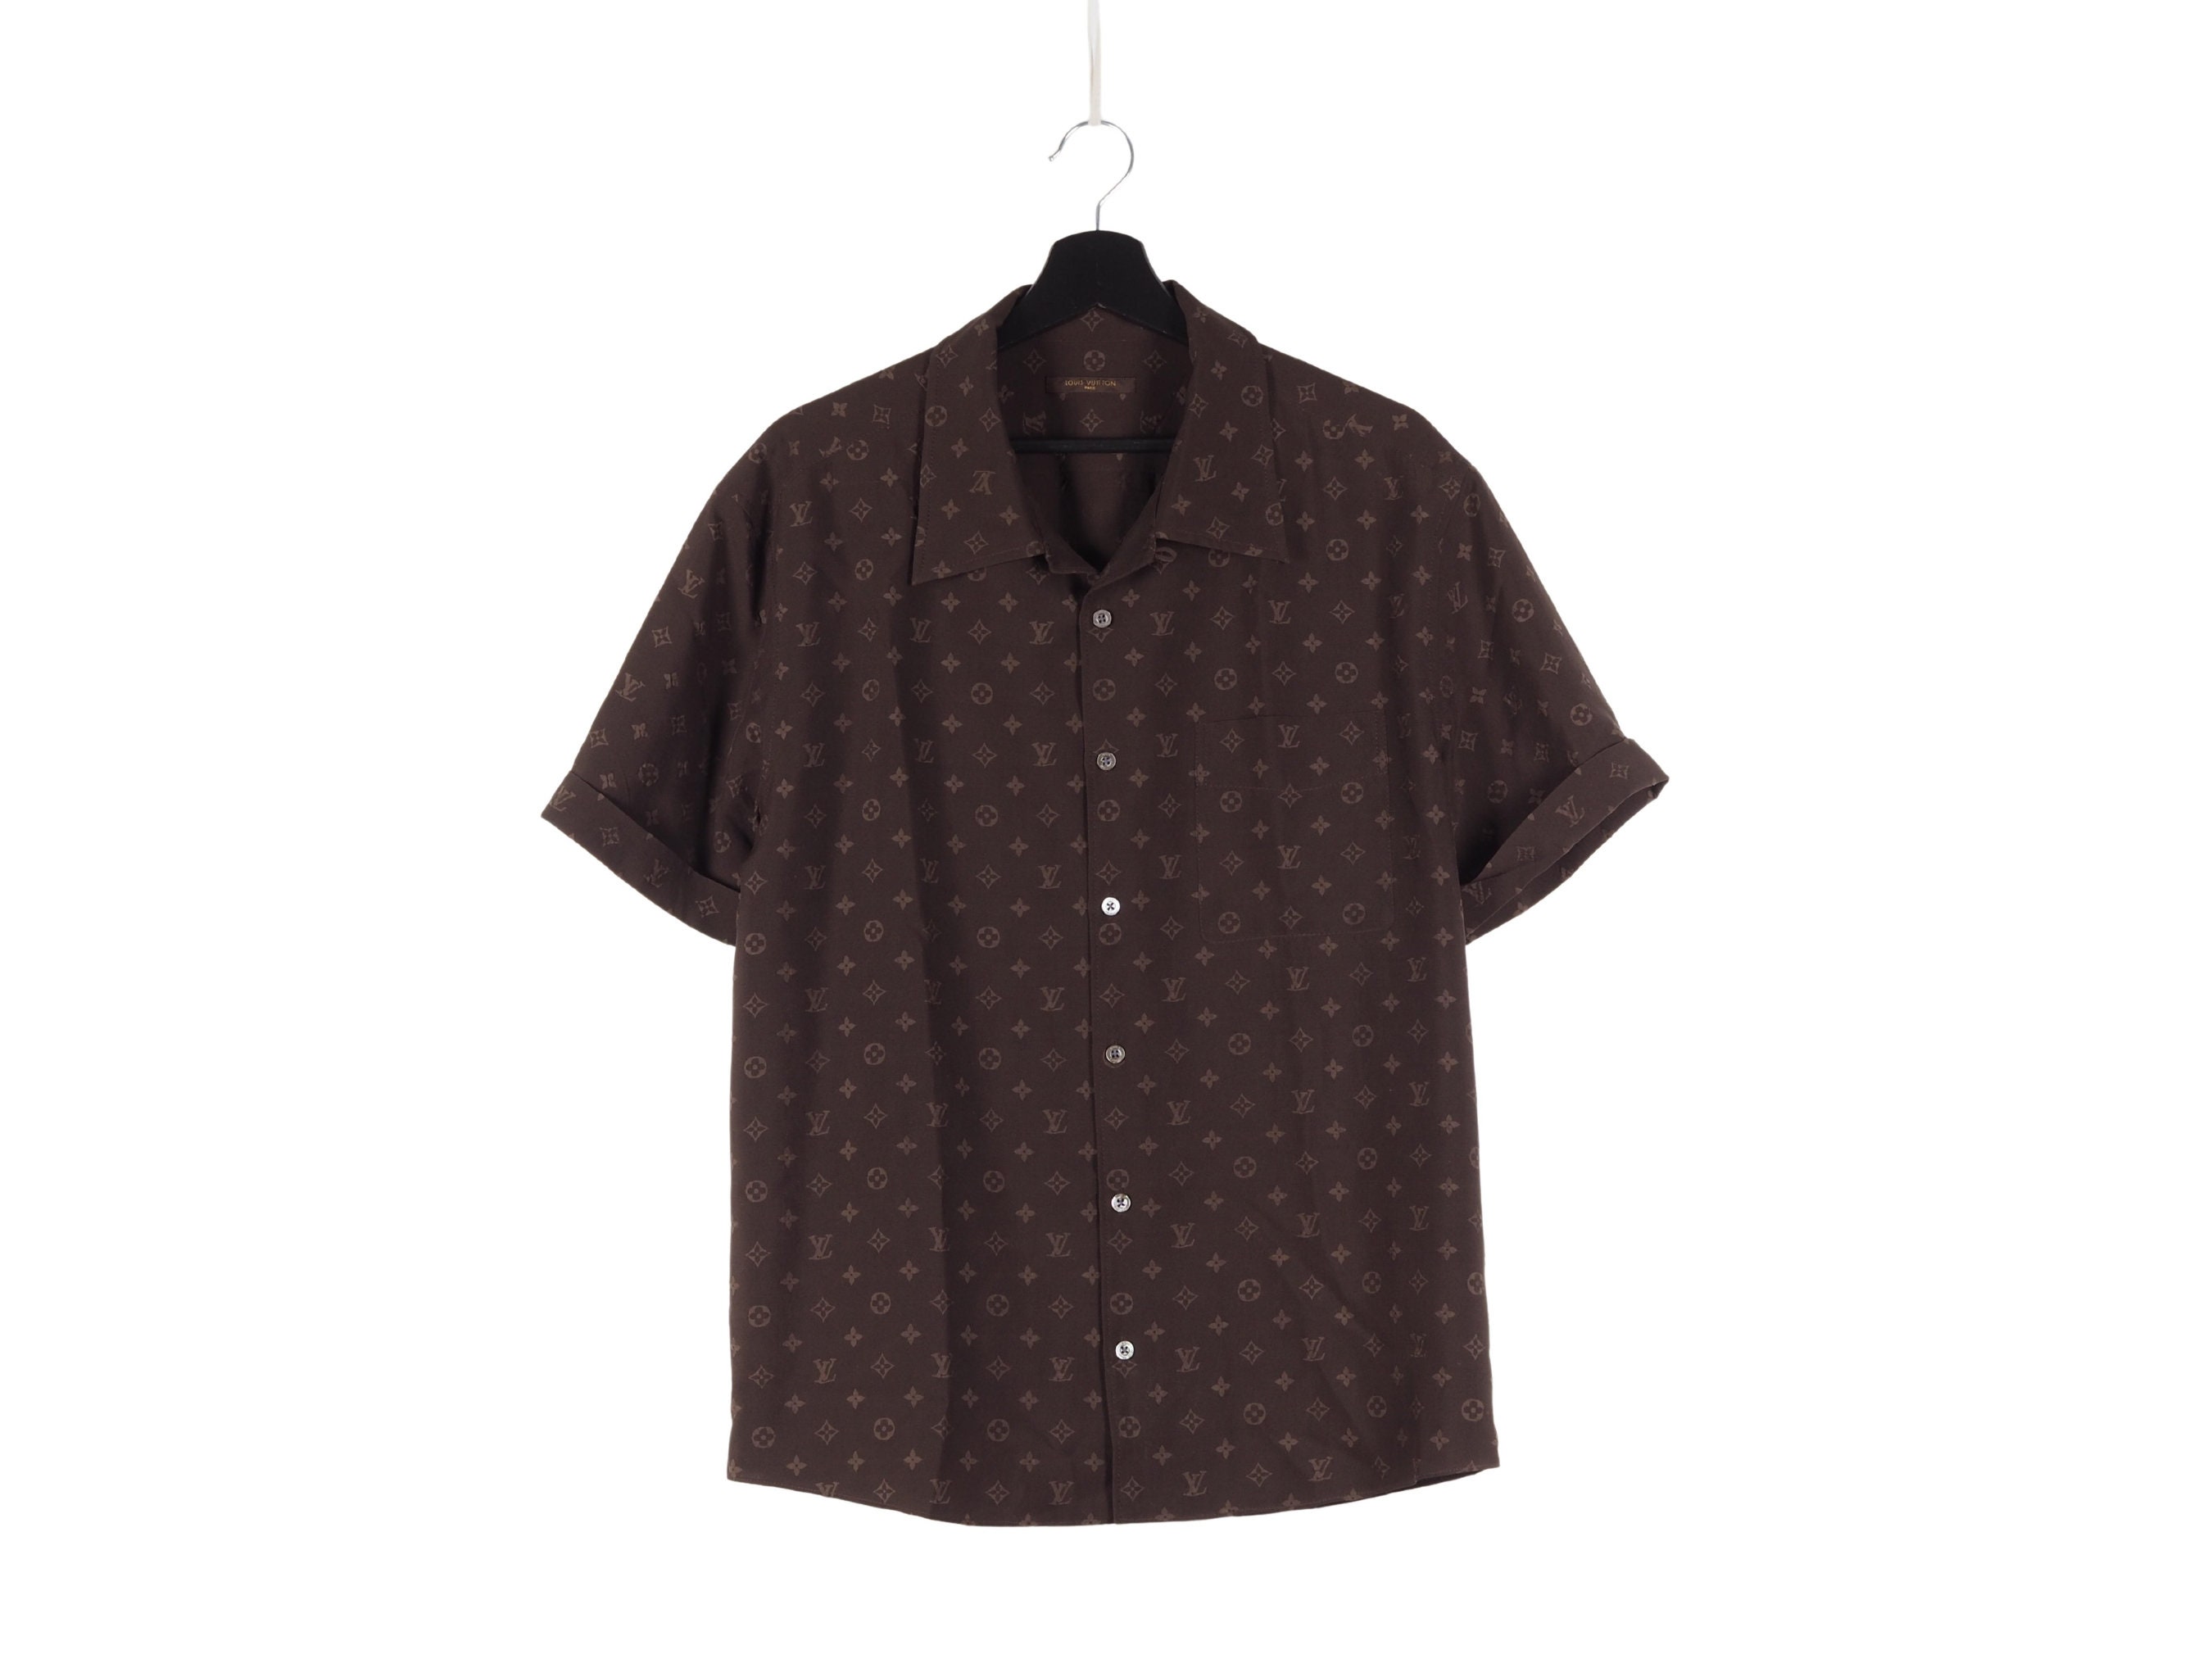 Louis Vuitton, Shirts, Authentic Louis Vuitton Black Flocked Monogram  Classic Shirt A979e